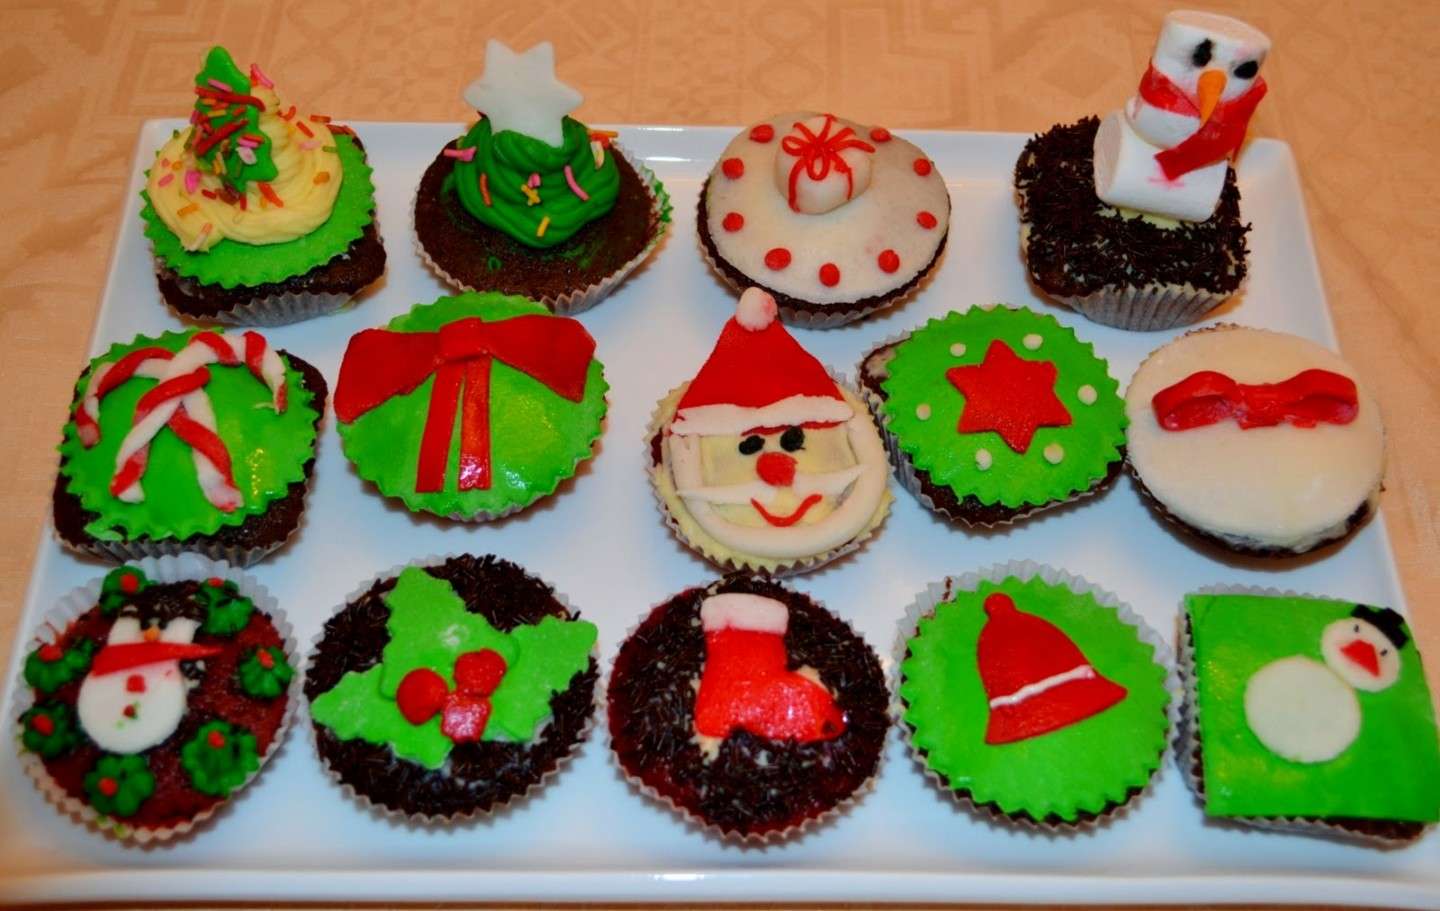 Come decorare i cupcakes